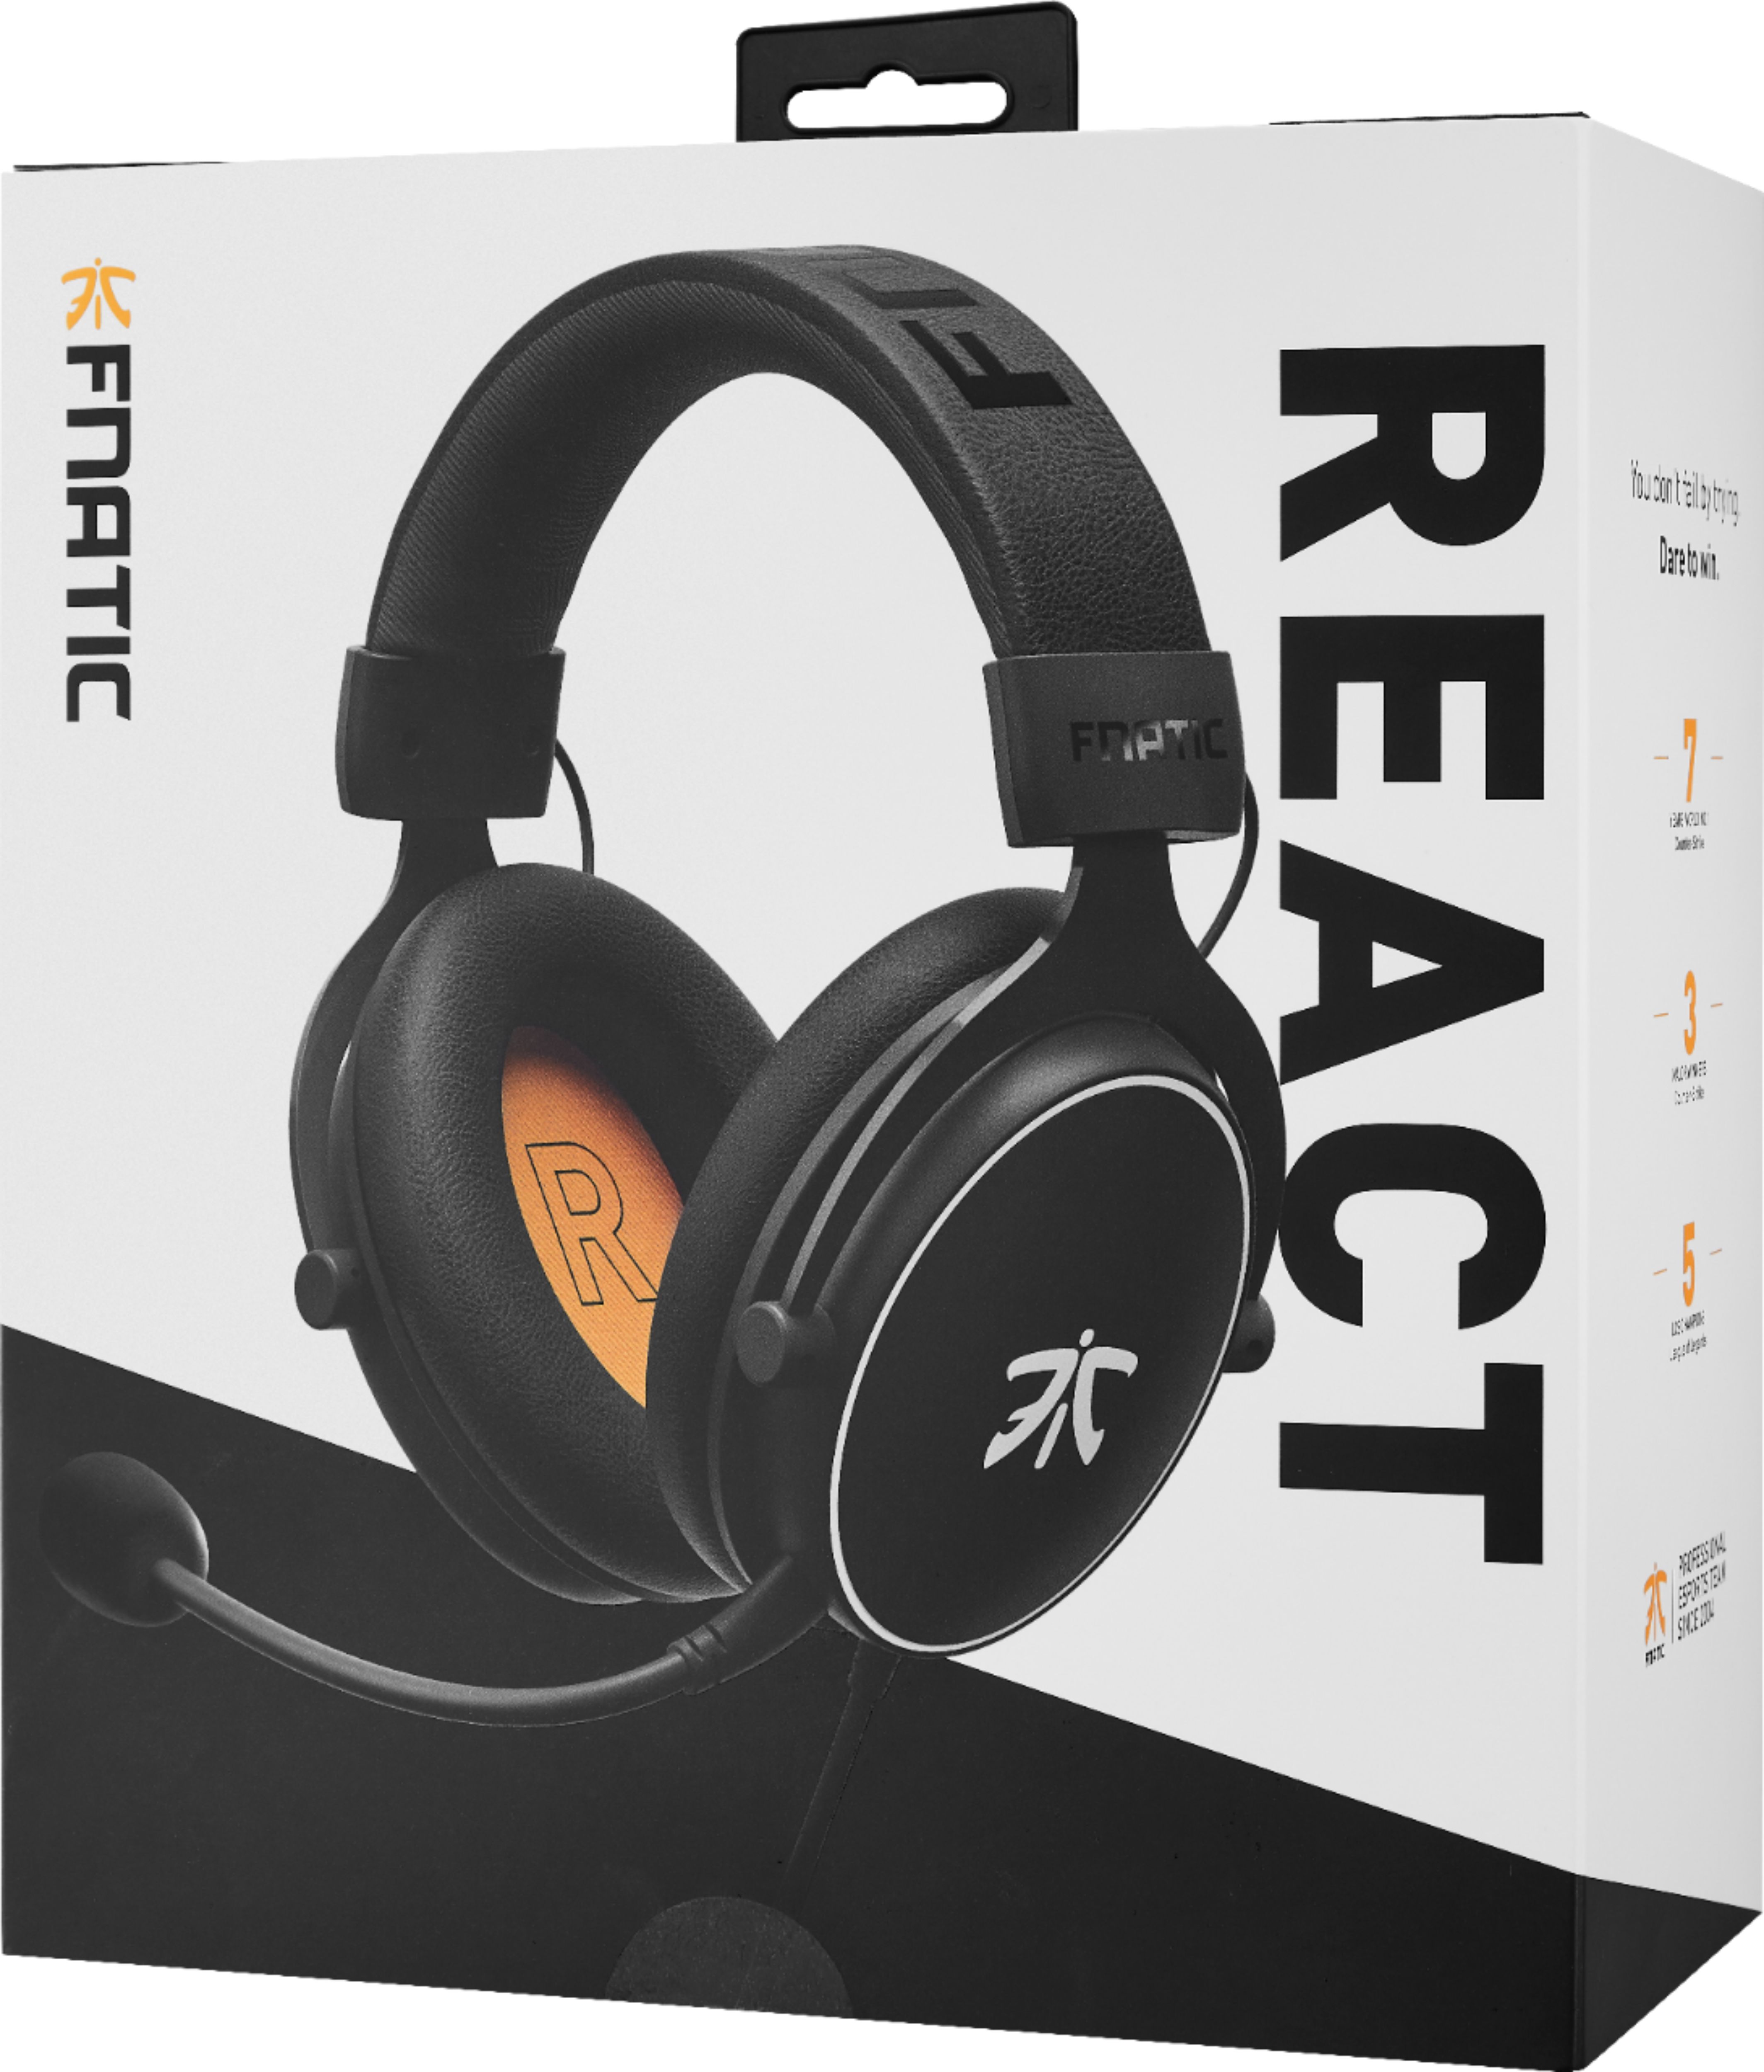 Fnatic REACT Analog Gaming Headset (HS0003-001)